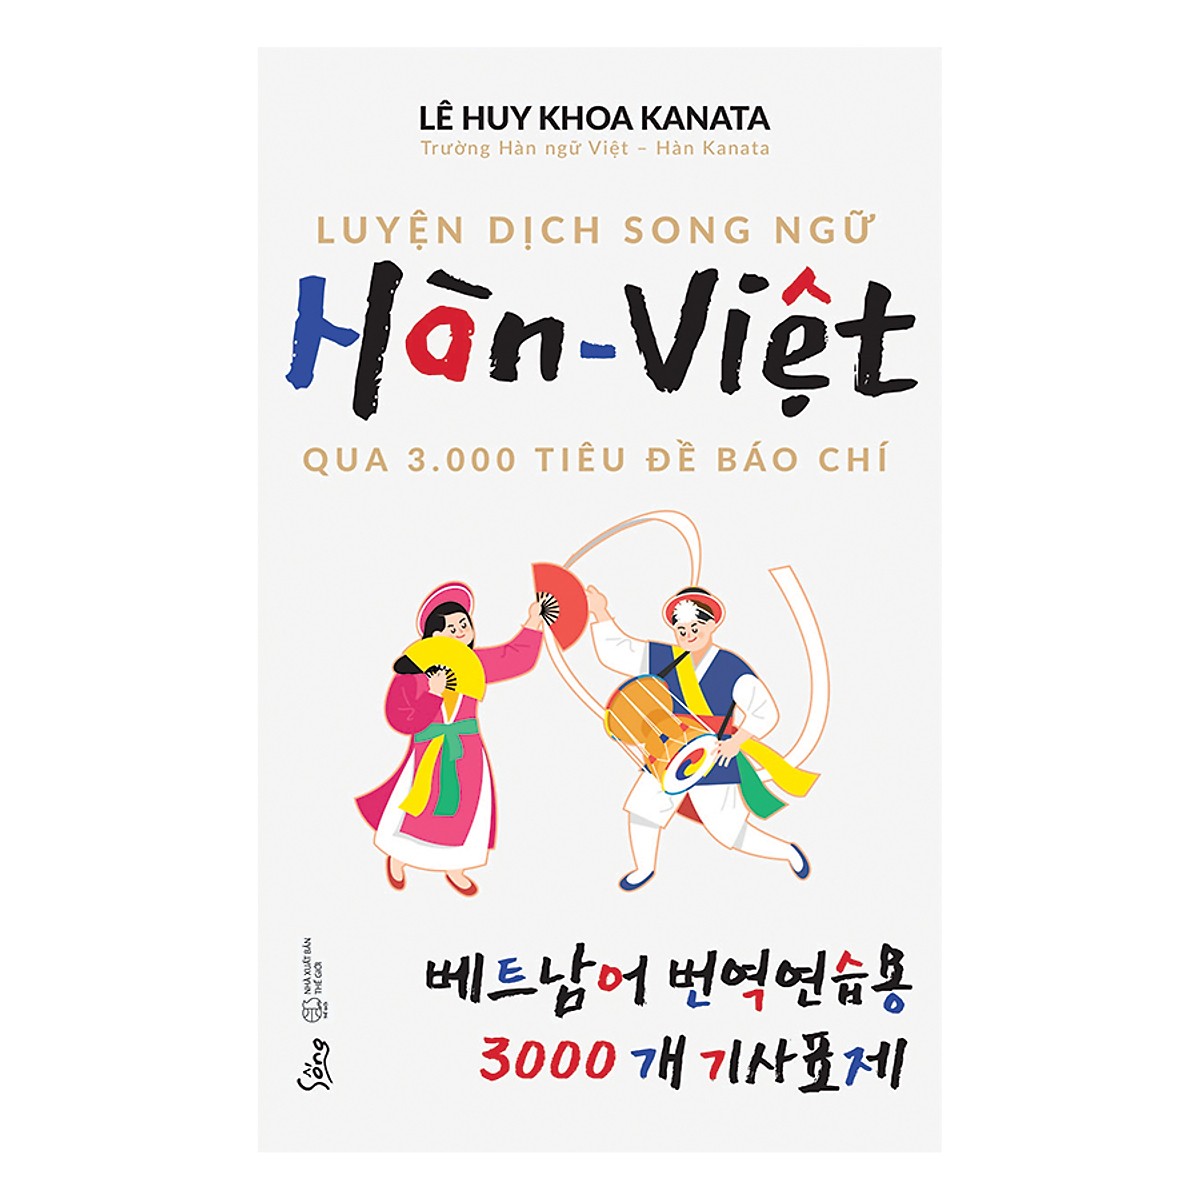 Luyện Dịch Song Ngữ Hàn - Việt Qua 3.000 Tiêu Đề Báo Chí (Quà Tặng Tickbook)